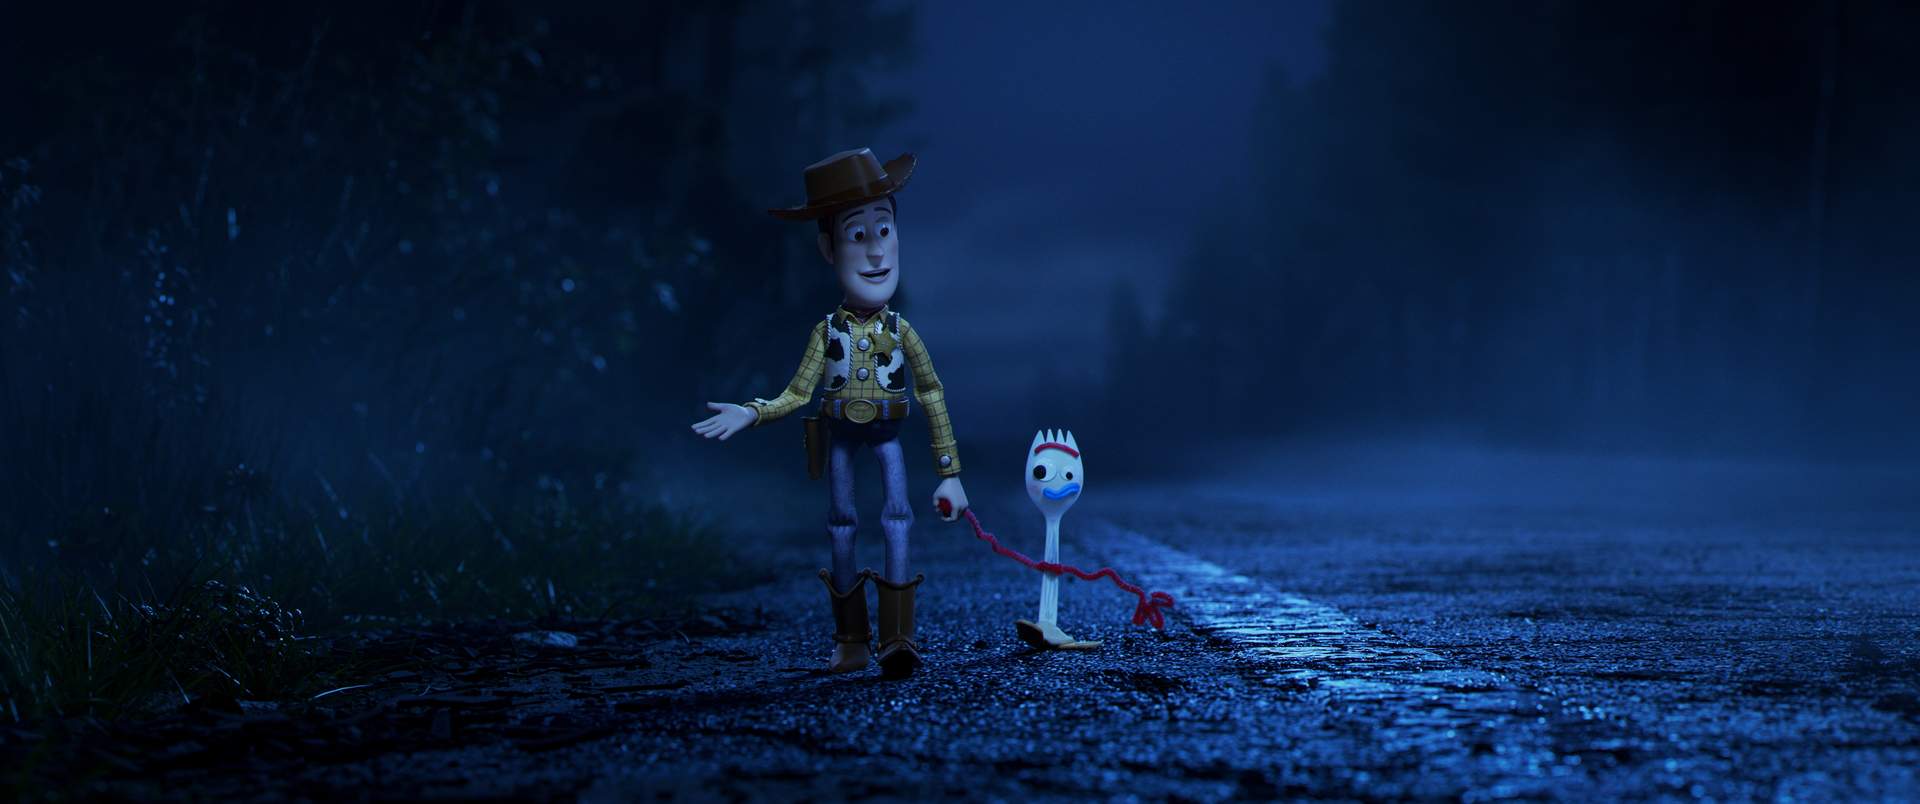 Toy Story: Alles hört auf kein Kommando - Szenenbild 3 von 5